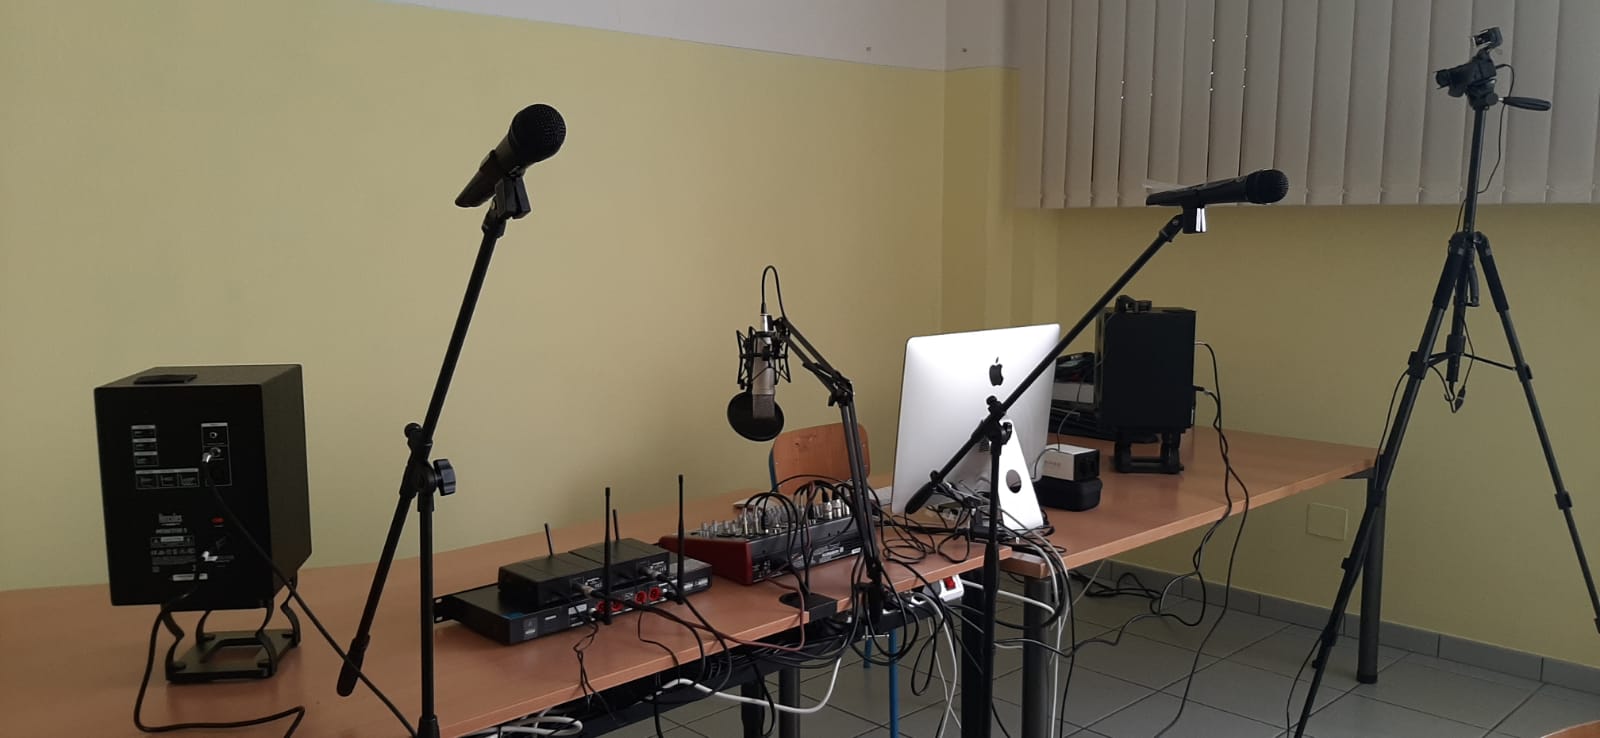 Web Radio 3.0, la radio dell’I.C. “Collodi Marini” di Avezzano